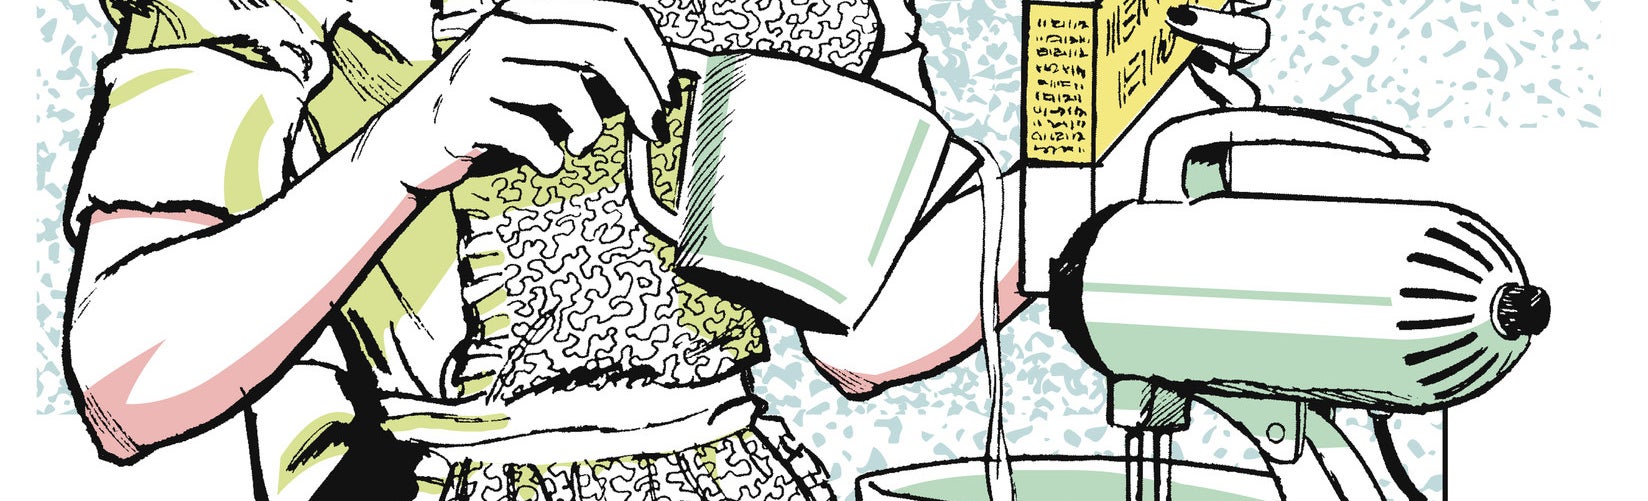 Pedaço de ilustração, com uma pessoa de avental segurando uma caixa de farinha e uma jarra despejando líquido dentro de uma batedeira.